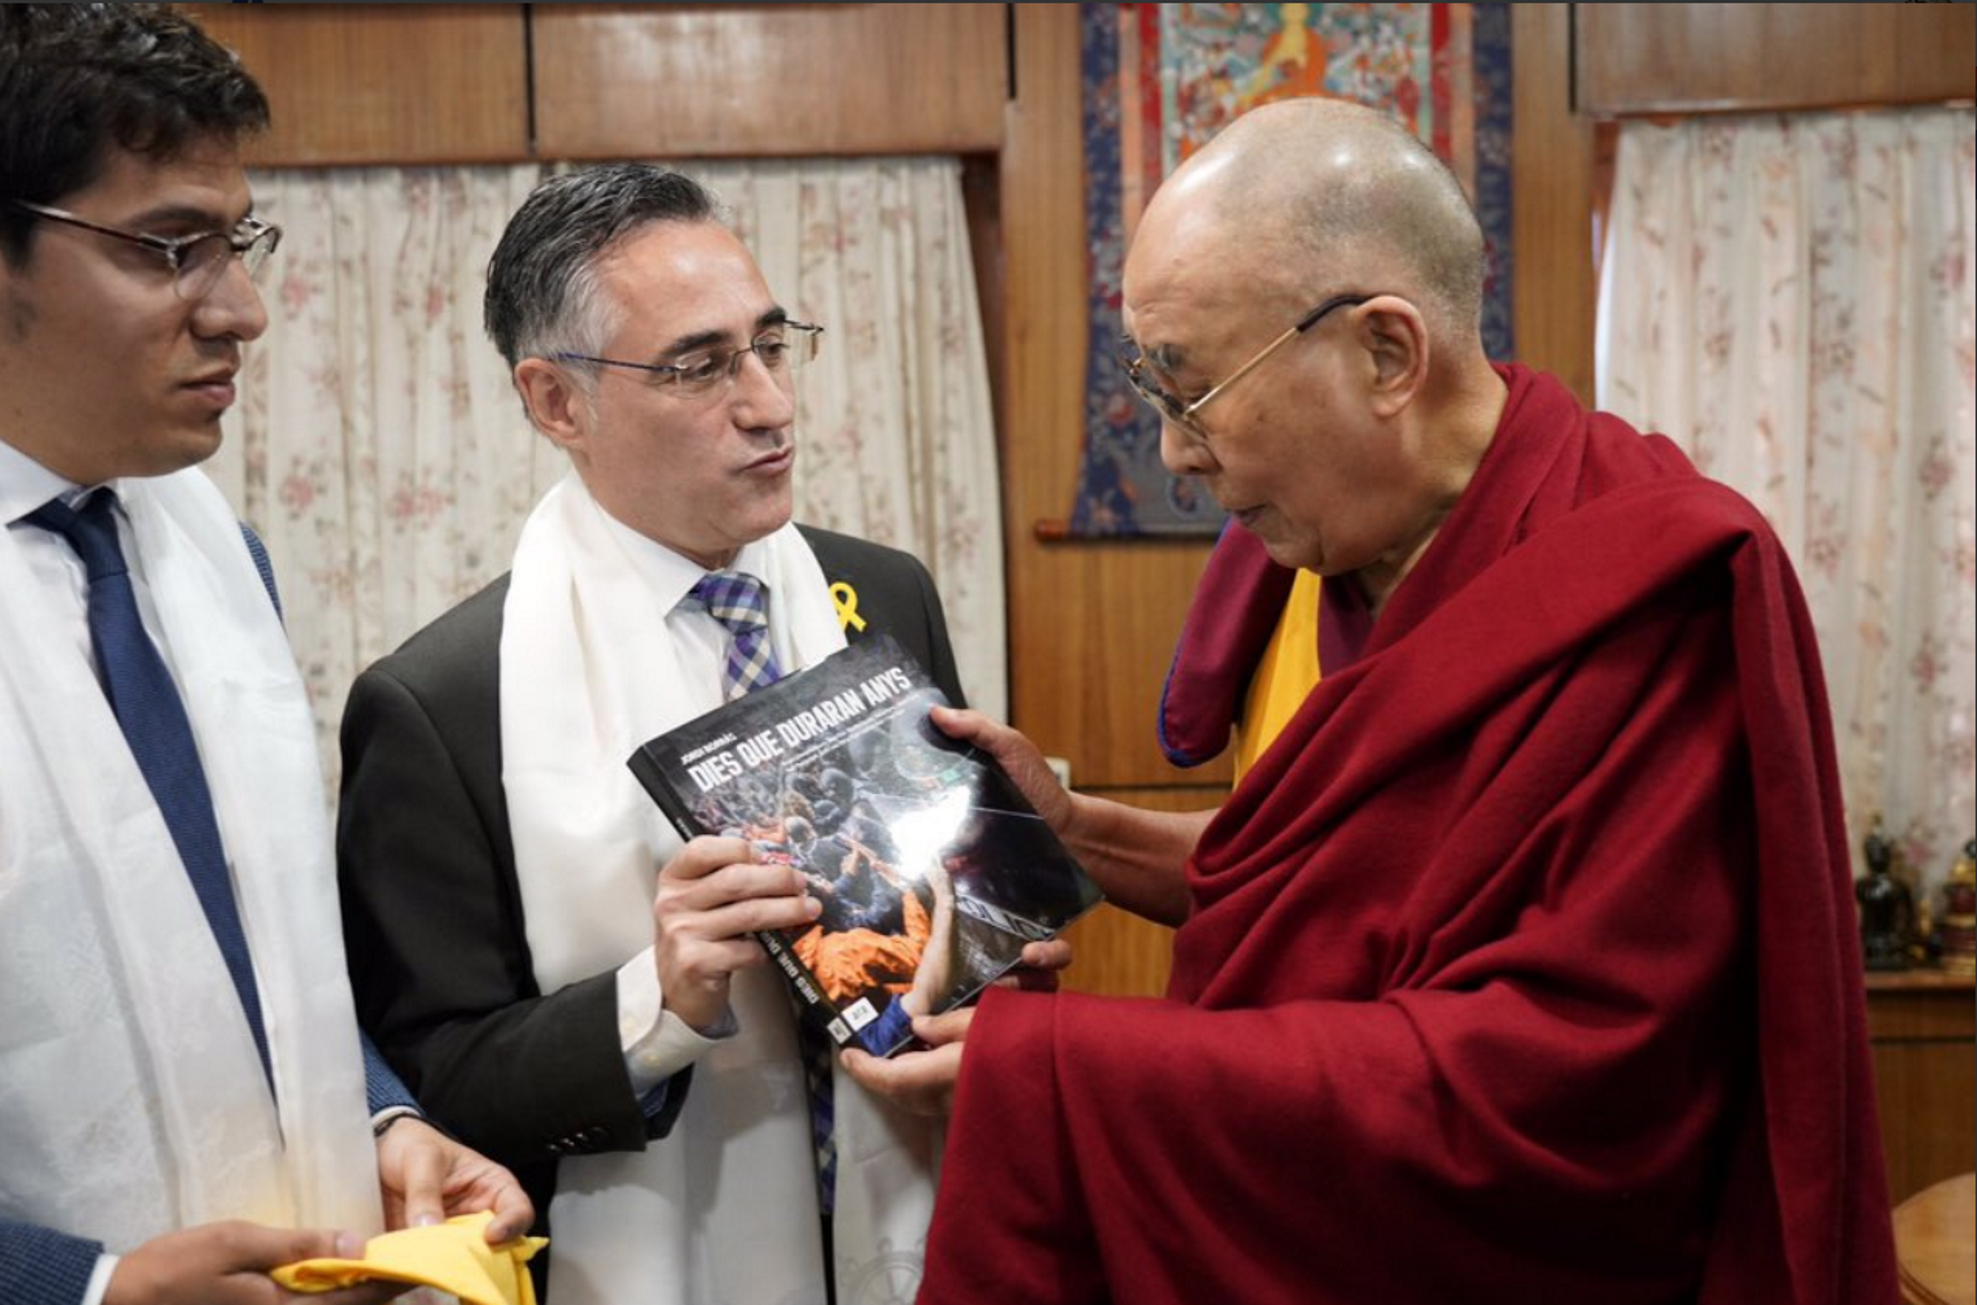 Tremosa regala al Dalai-lama un llibre sobre el referèndum de l'1-O